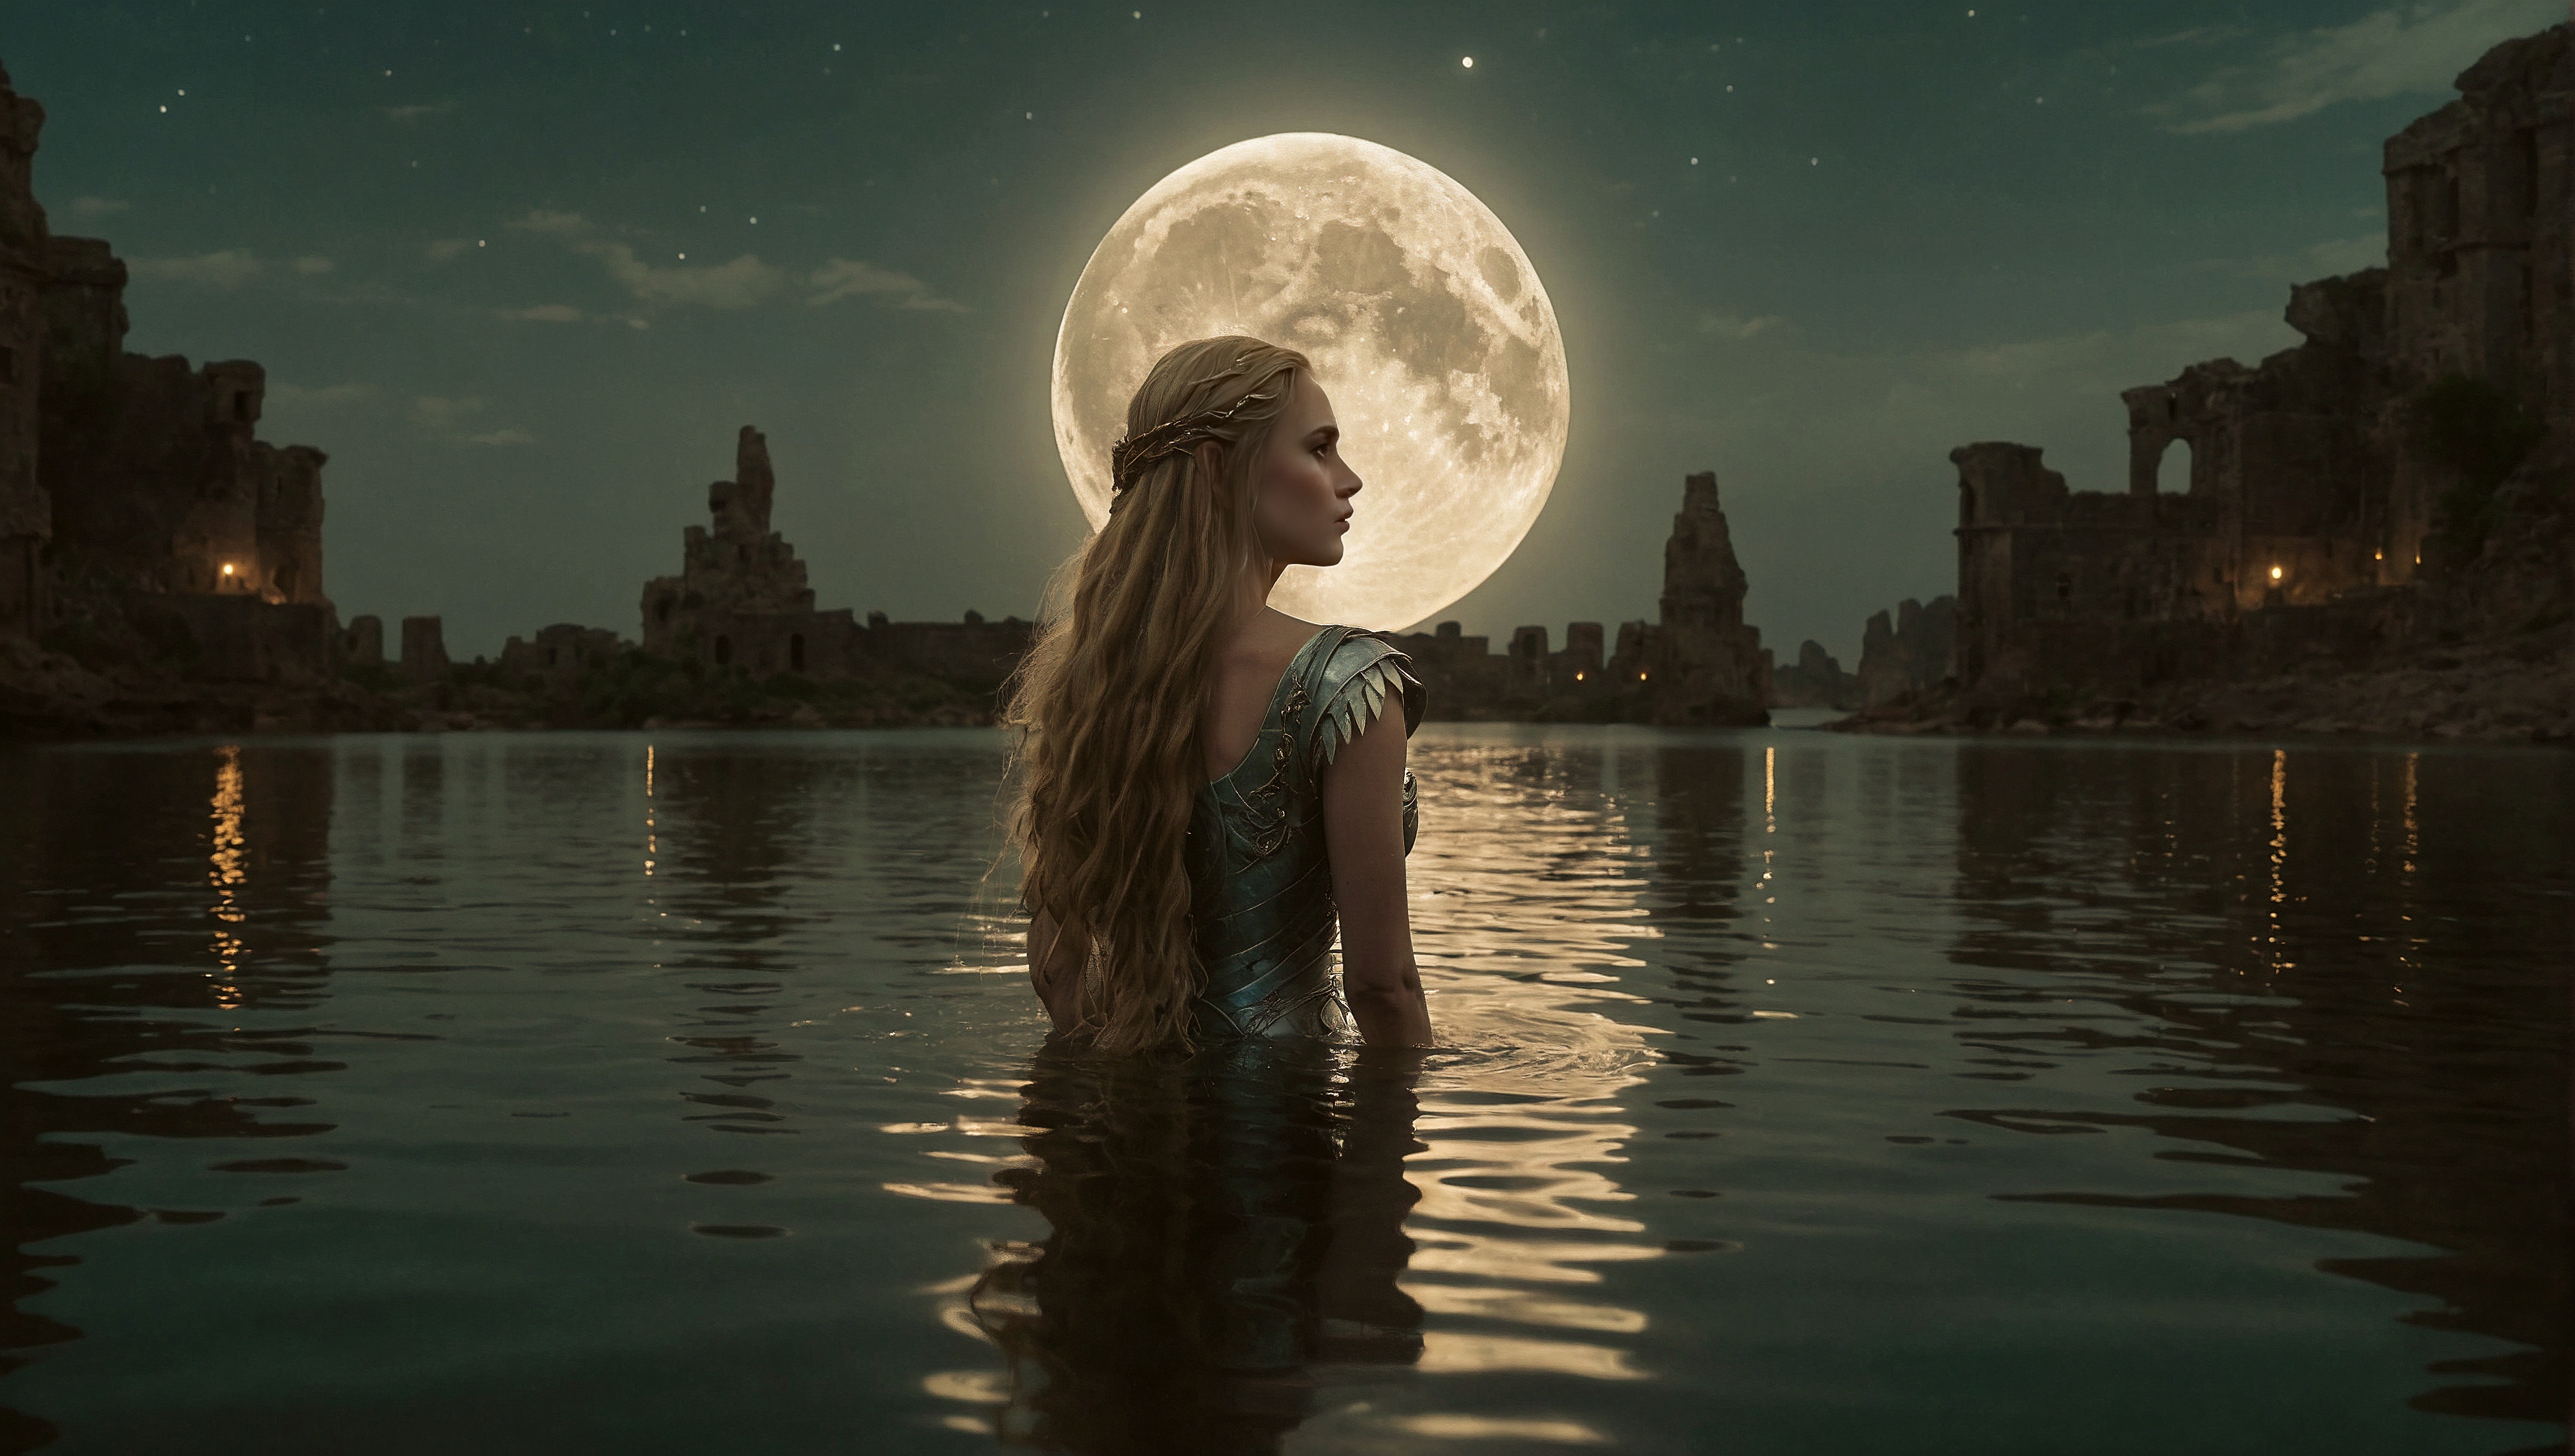 水中转头望月的少女